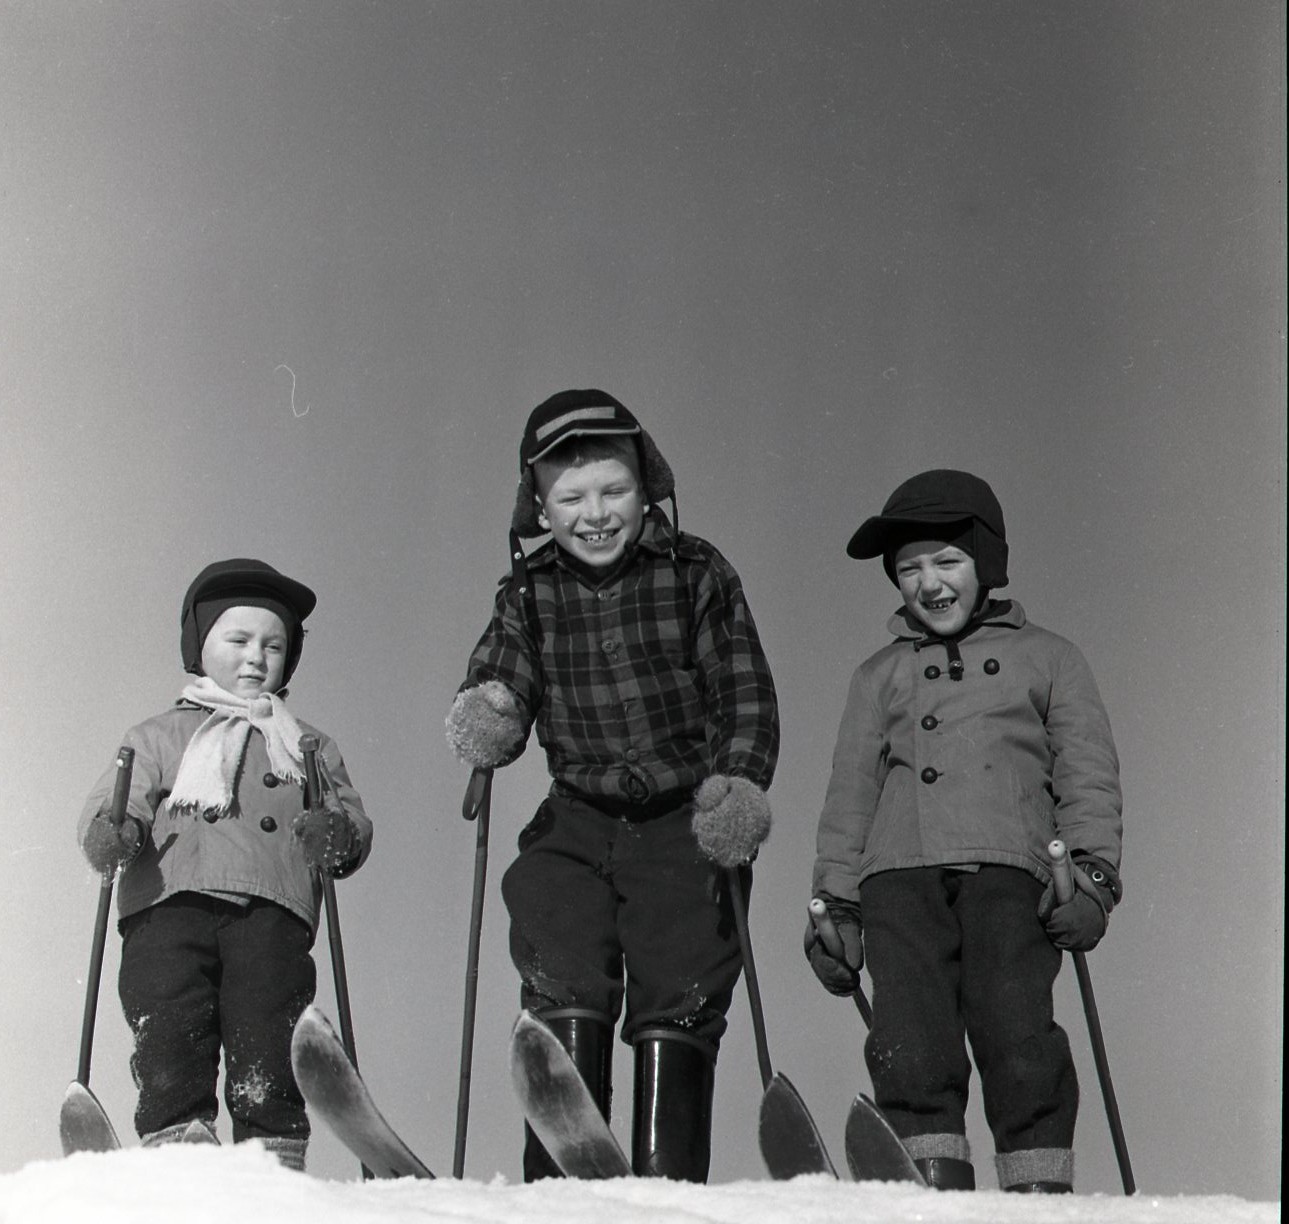 Skidåkande bygrabbar i åbrinkarna 11 februari 1959 Foto: Hilding Mickelsson 